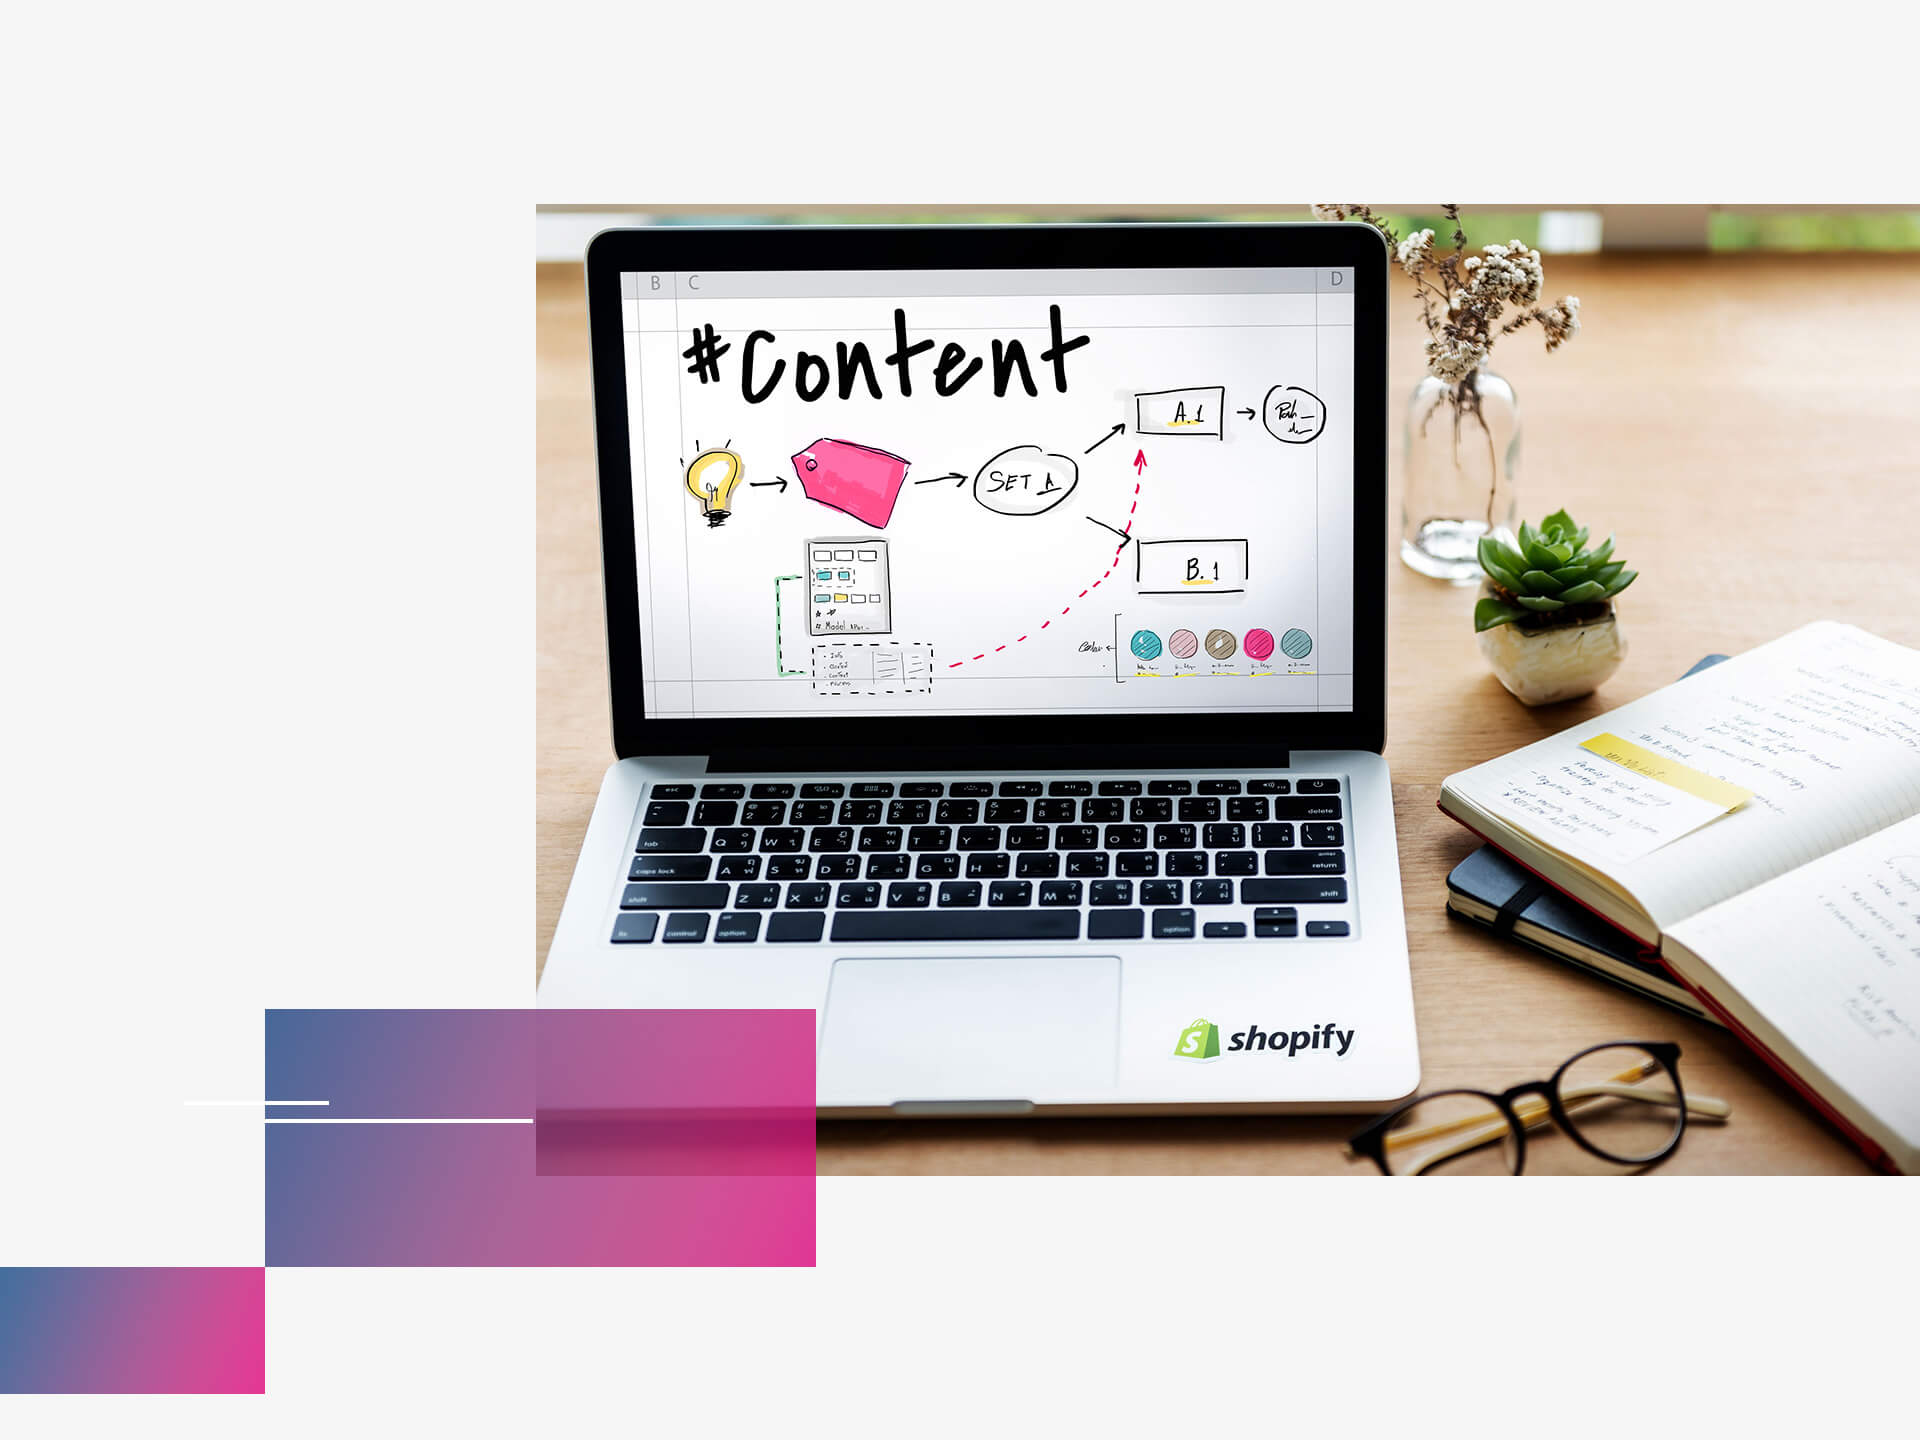 Laptop mit Shopify Content auf Screen & Shopify Logo